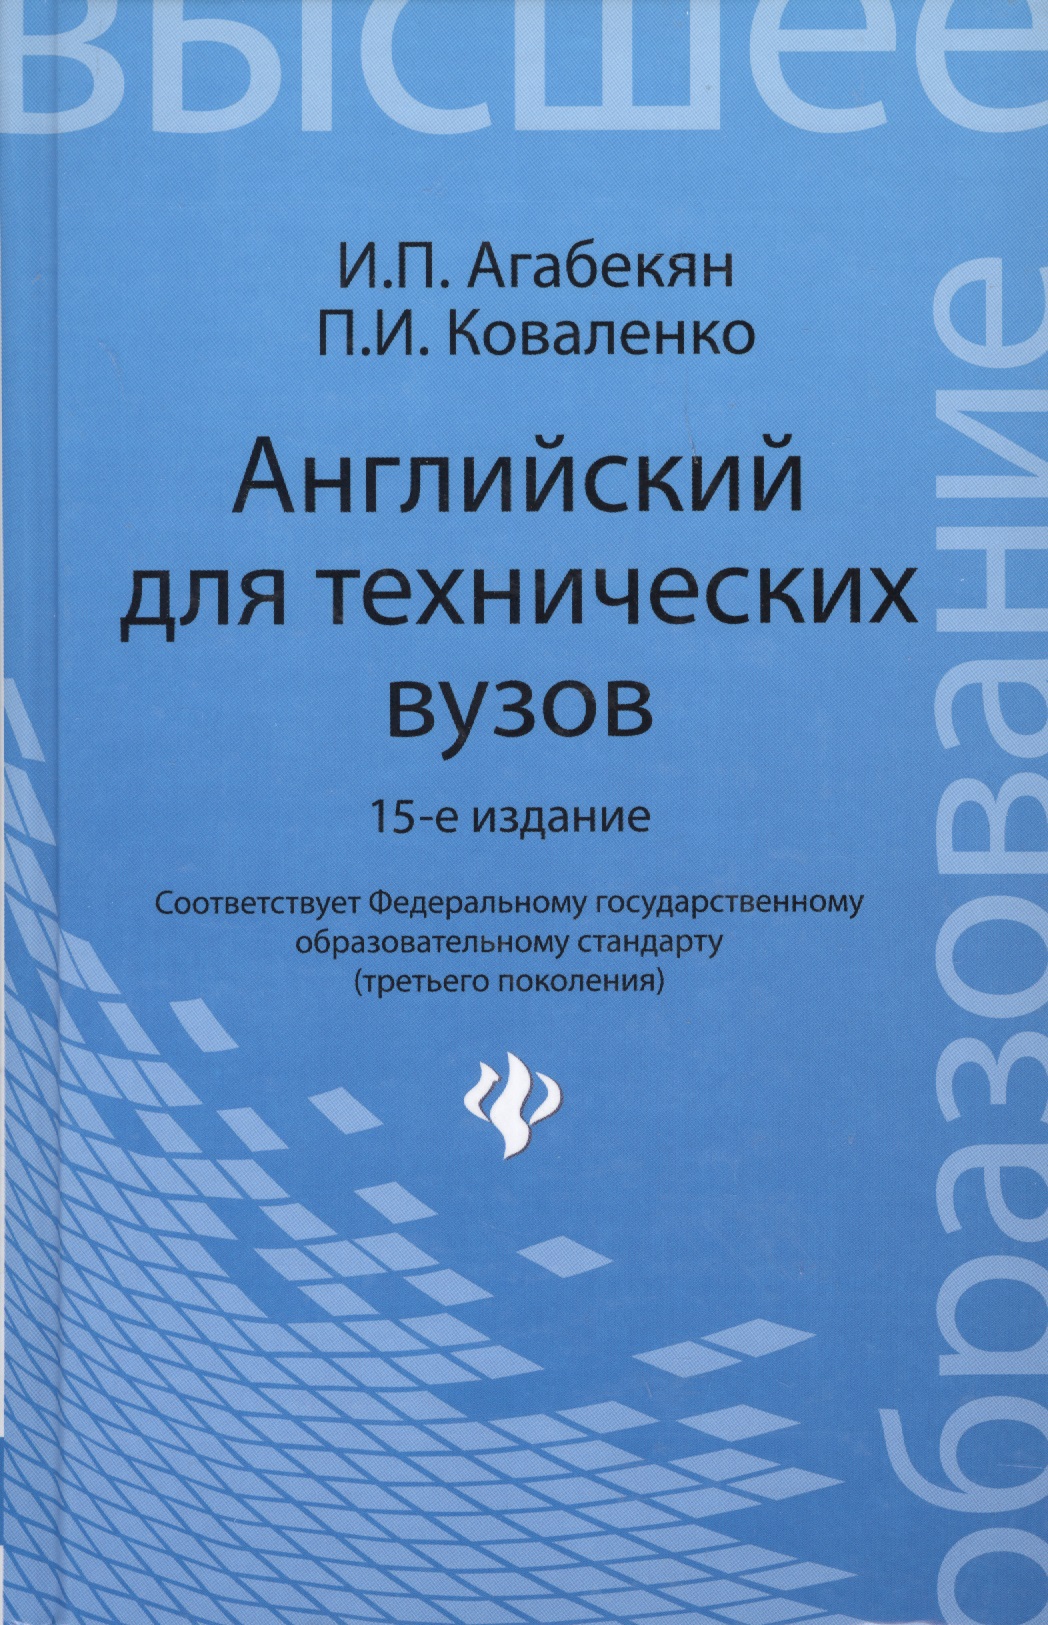 Учебник по английскому языку для технических вузов агабекян коваленко скачать бесплатно